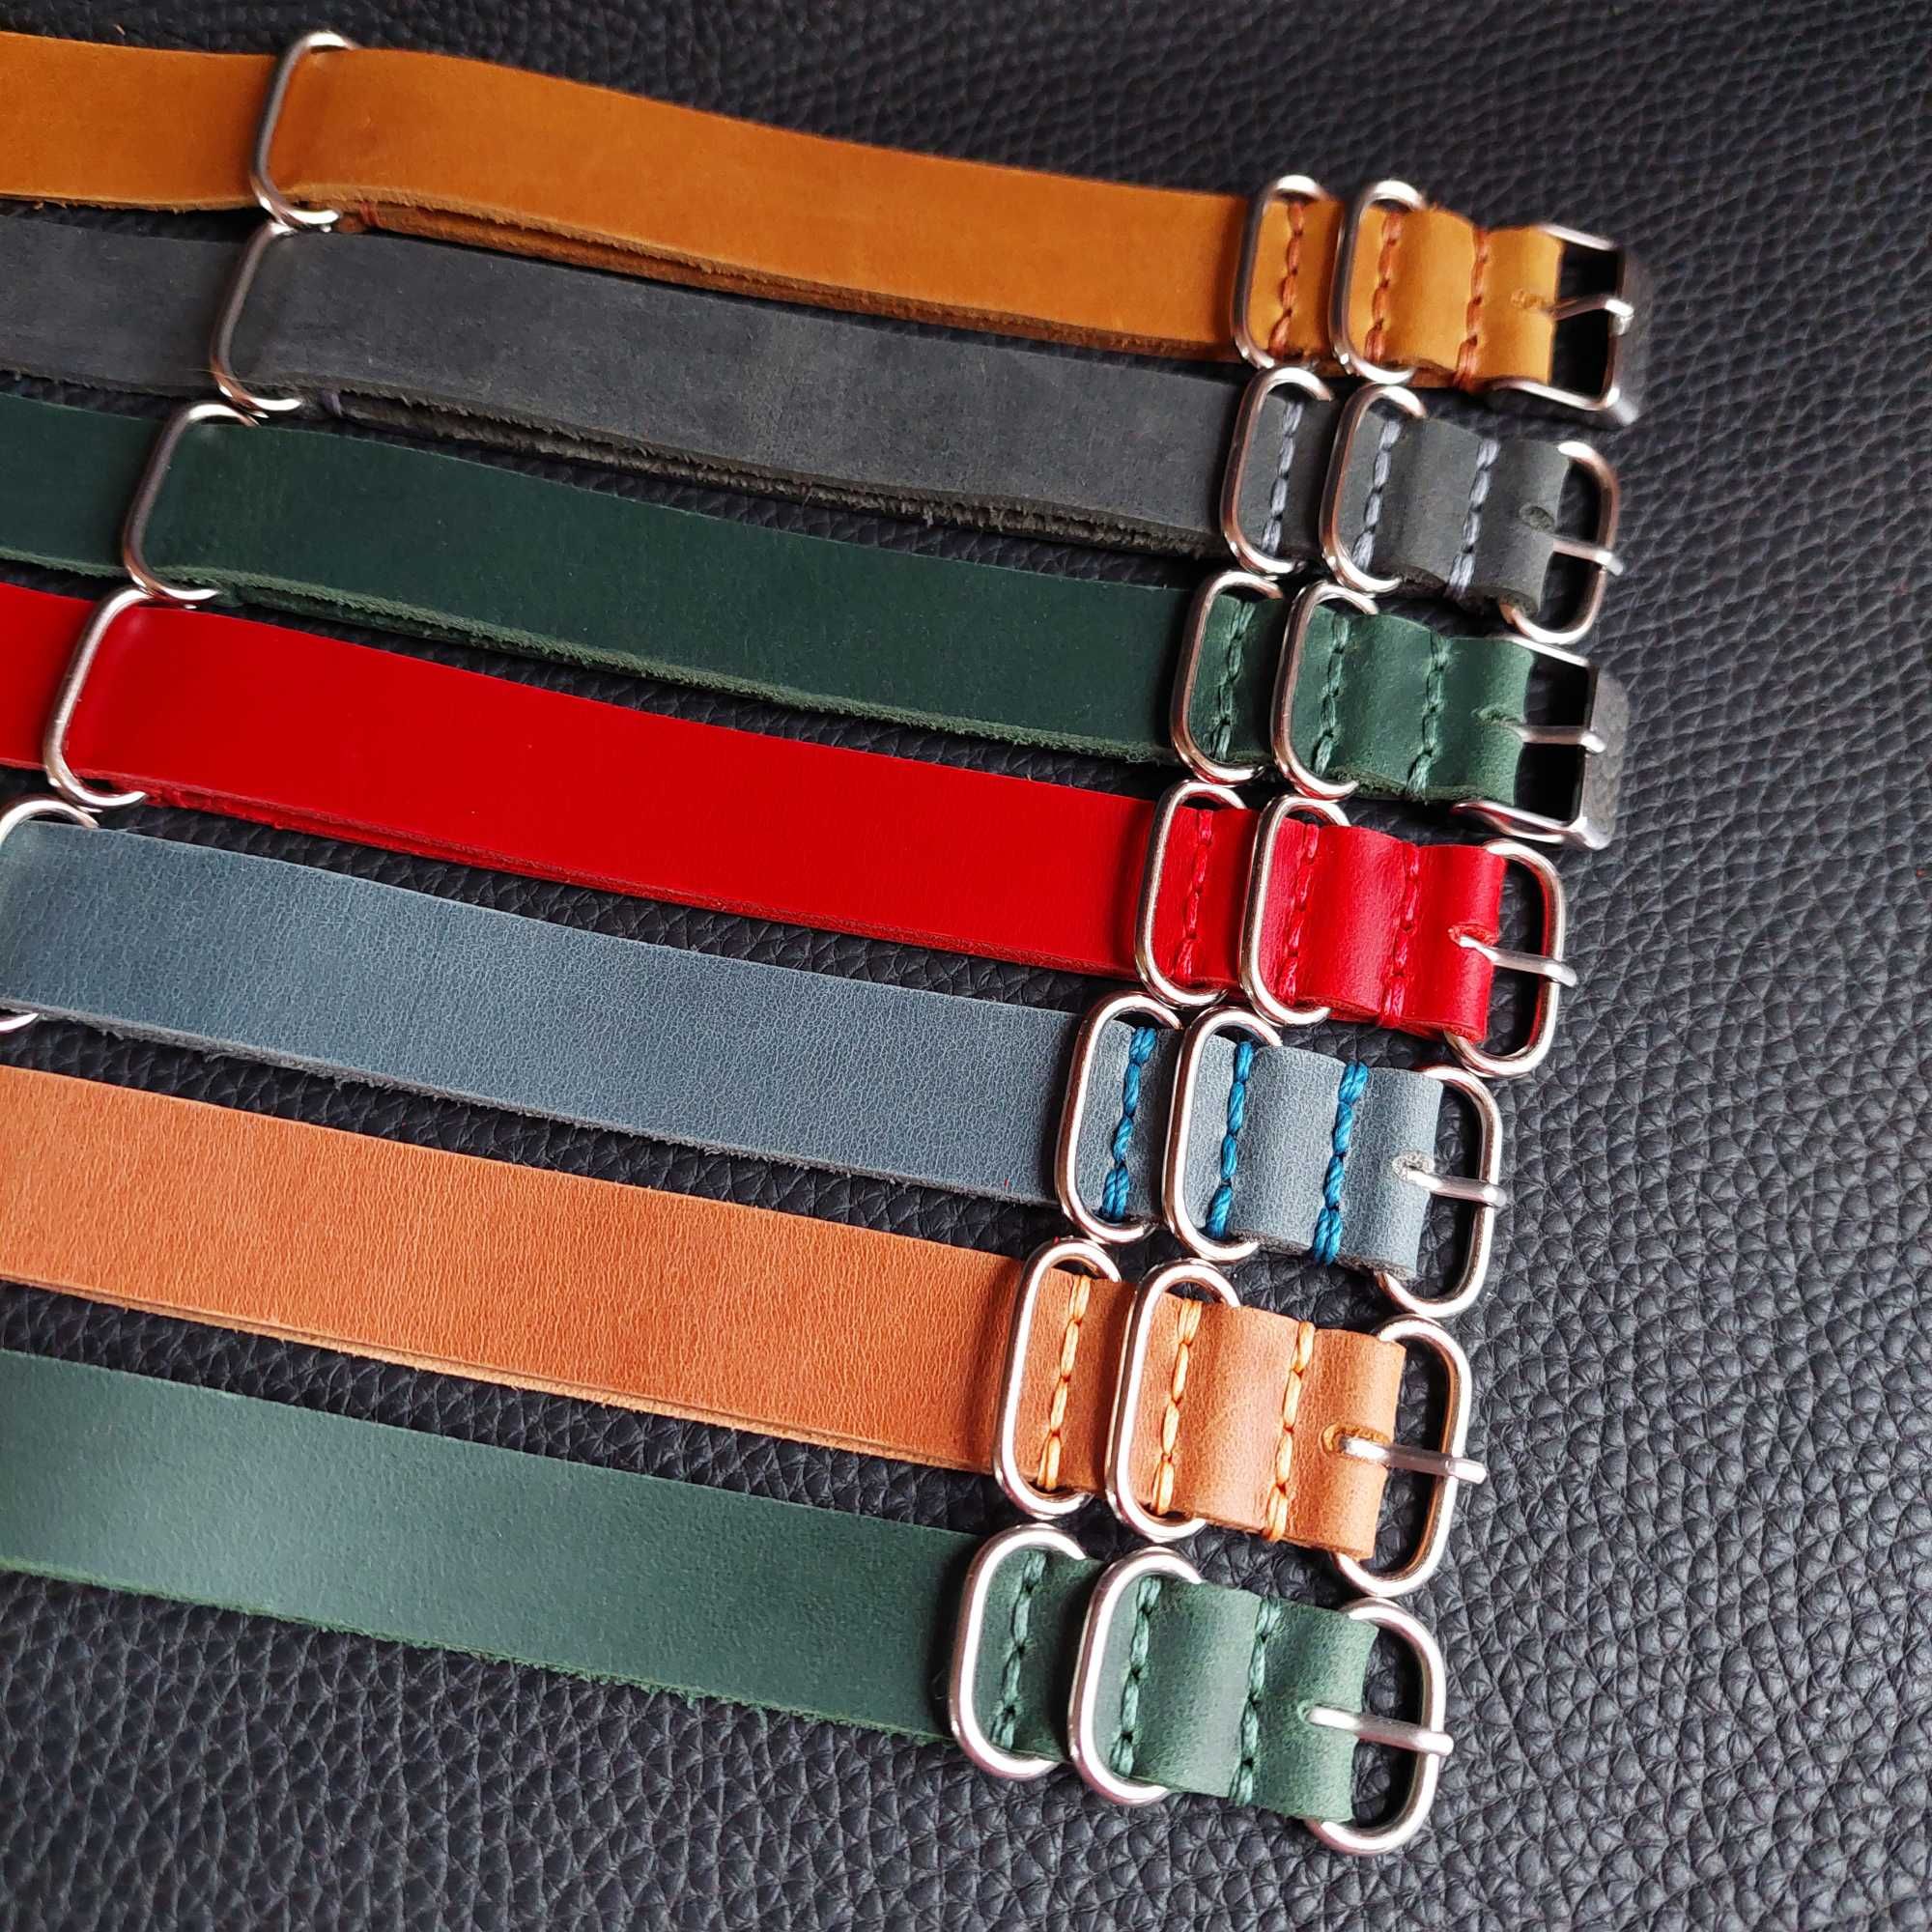 Кожаные Ремешки Нато Зулу NIKAZ для Часов - все размеры и цвета (N013)